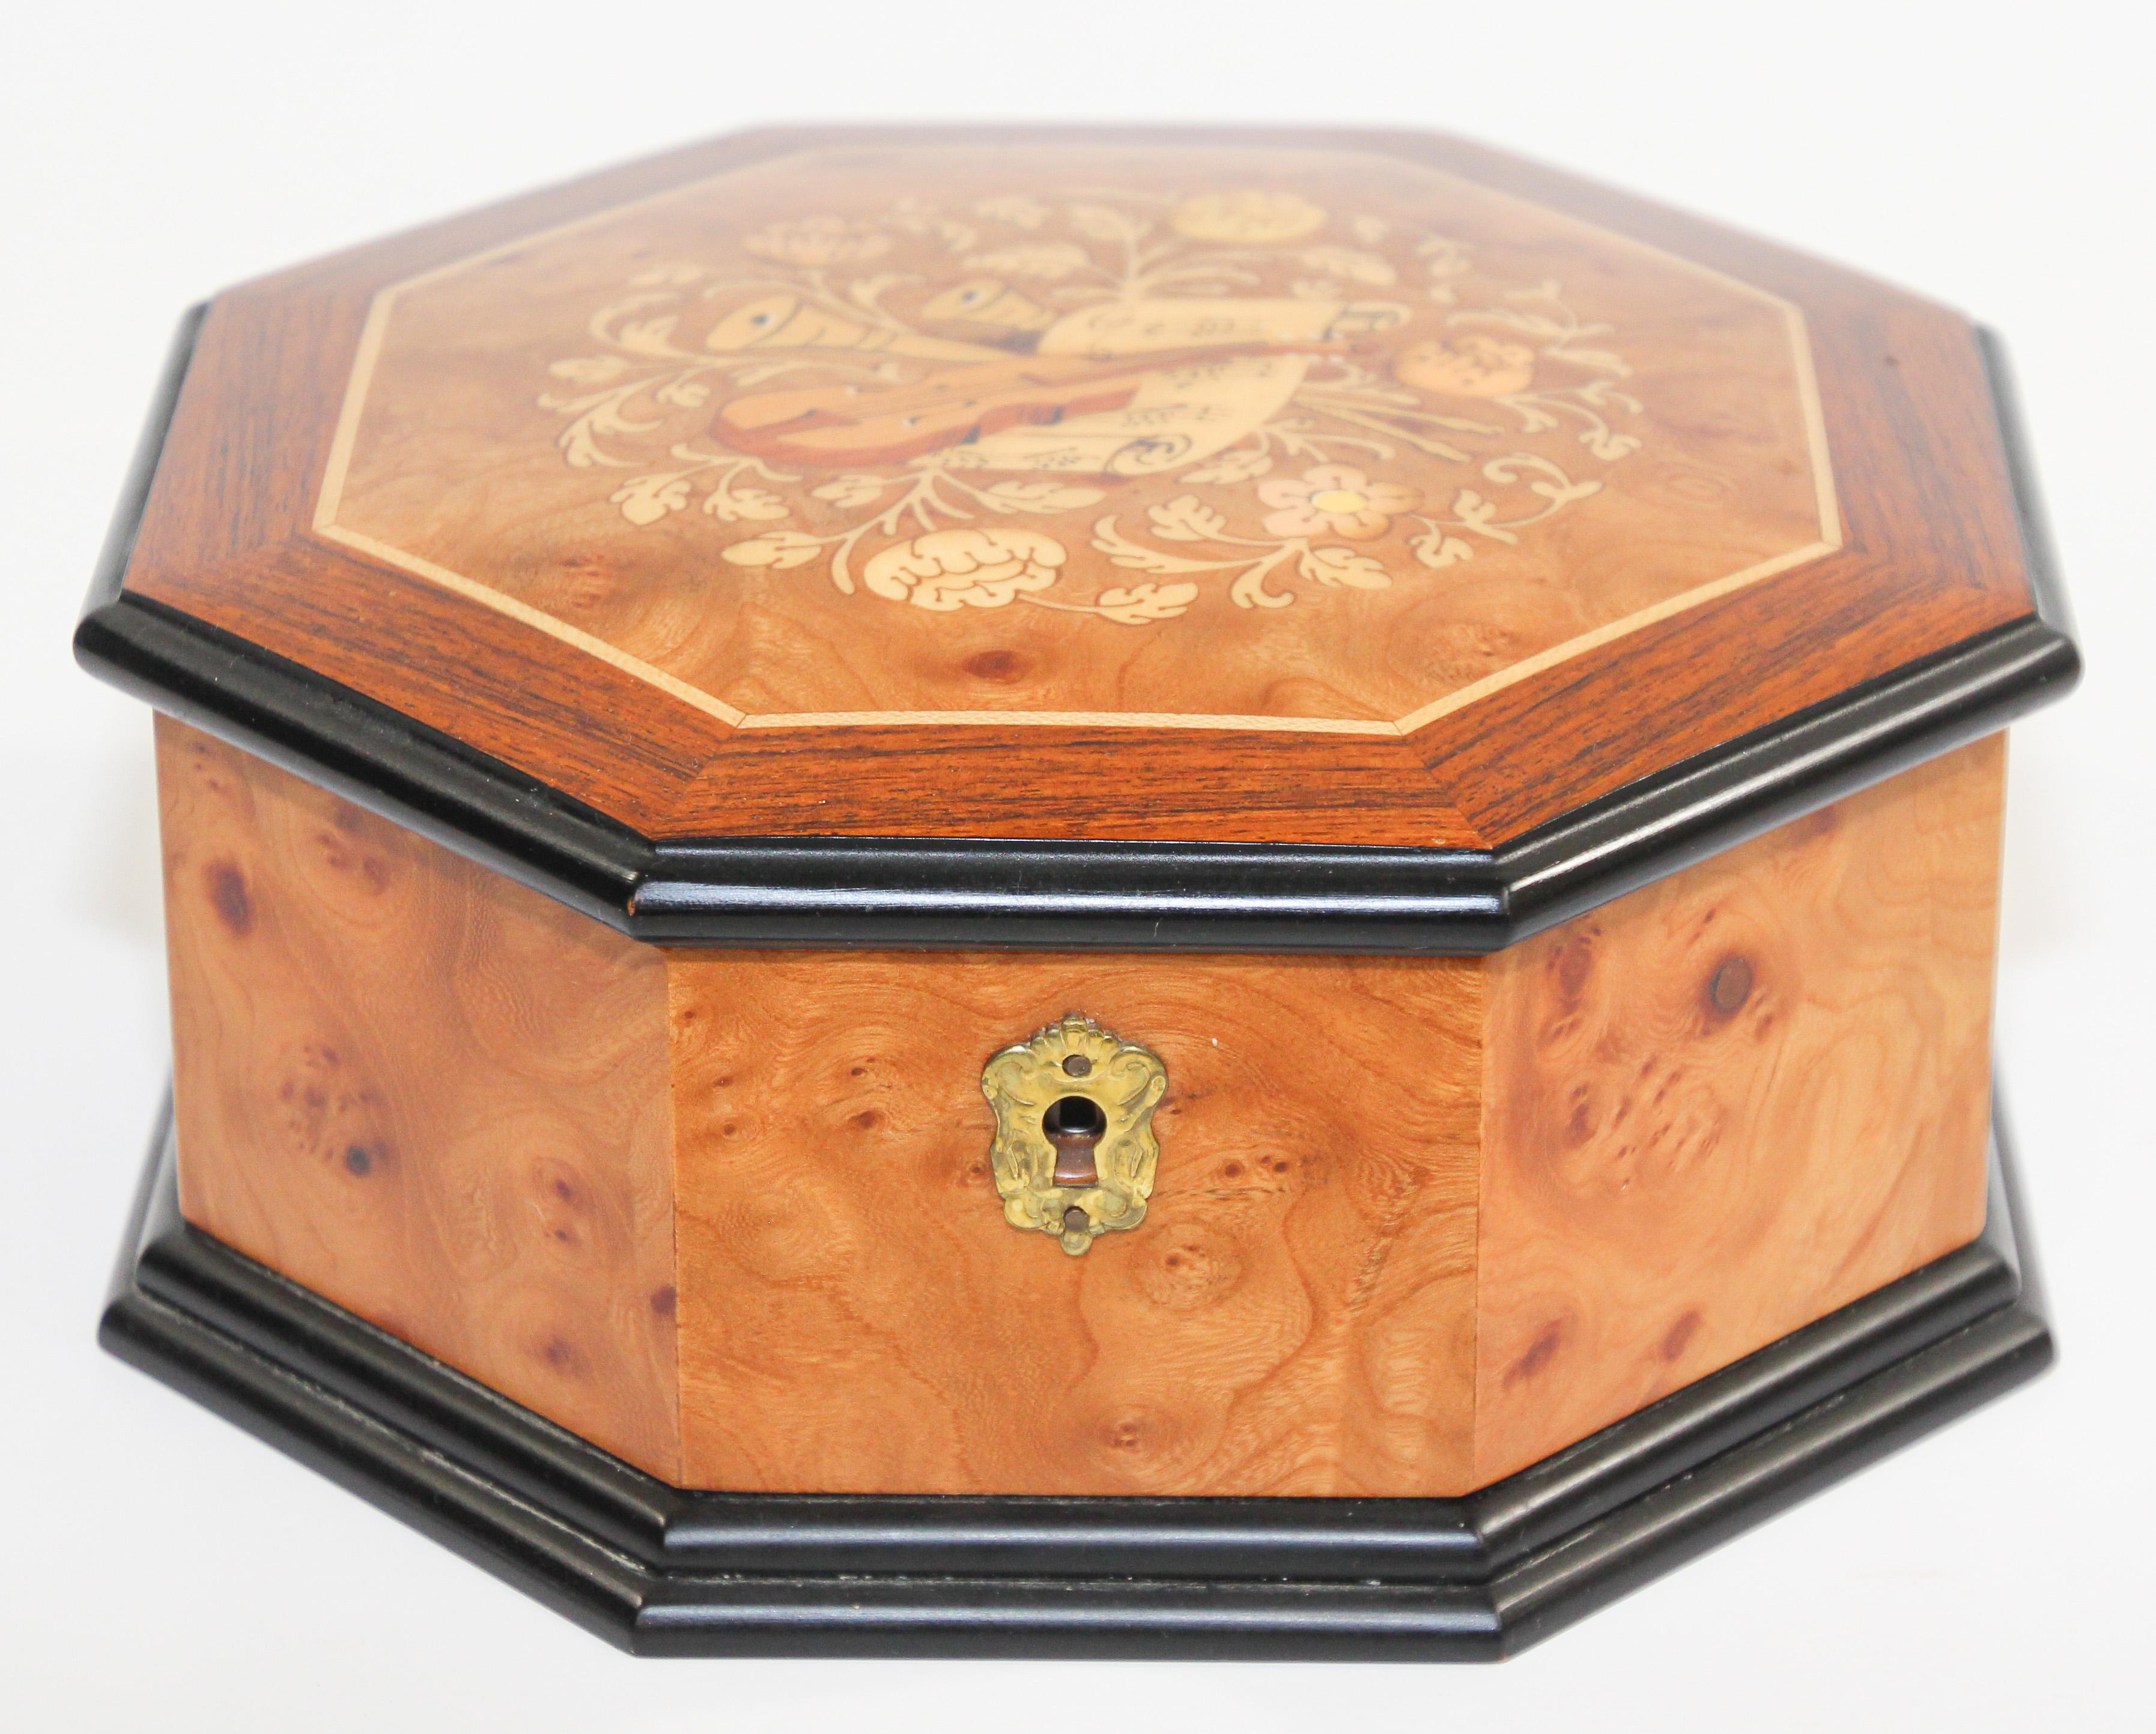 Elegante achteckige Holzspieluhr aus Thuya-Holz.
Der Thuya-Baum ist berühmt für die reichen Gold- und Brauntöne seiner Maserung und den einzigartigen exotischen Duft, der an Zedernholz erinnert.
Gefüttert mit braunem Samt.
Von Hand eingelegt mit